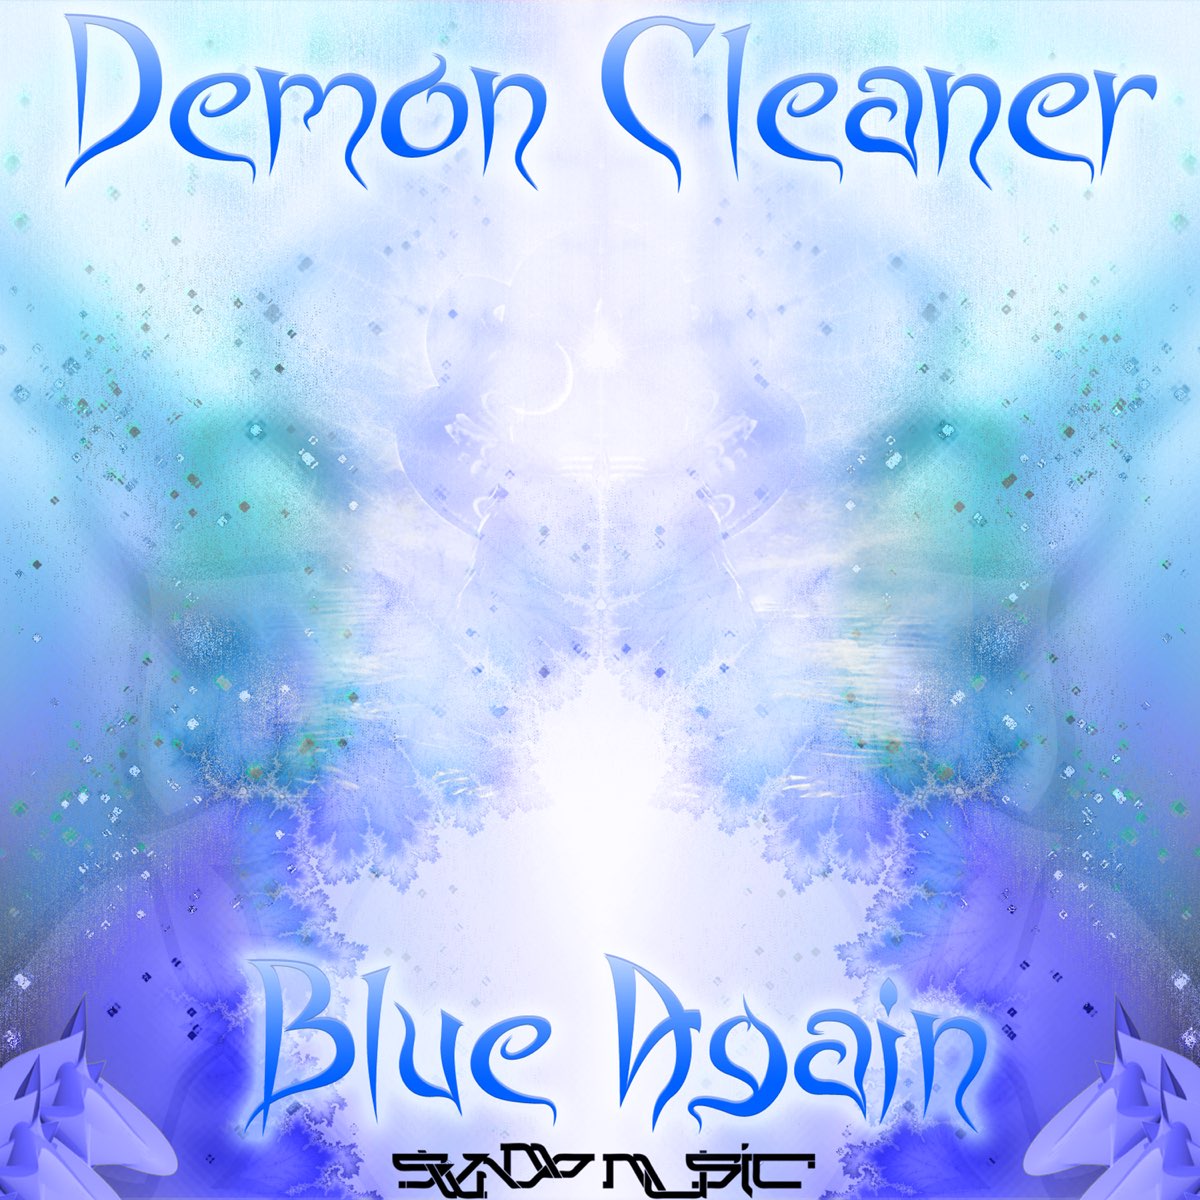 Demon Cleansing. Bliss Leaper.